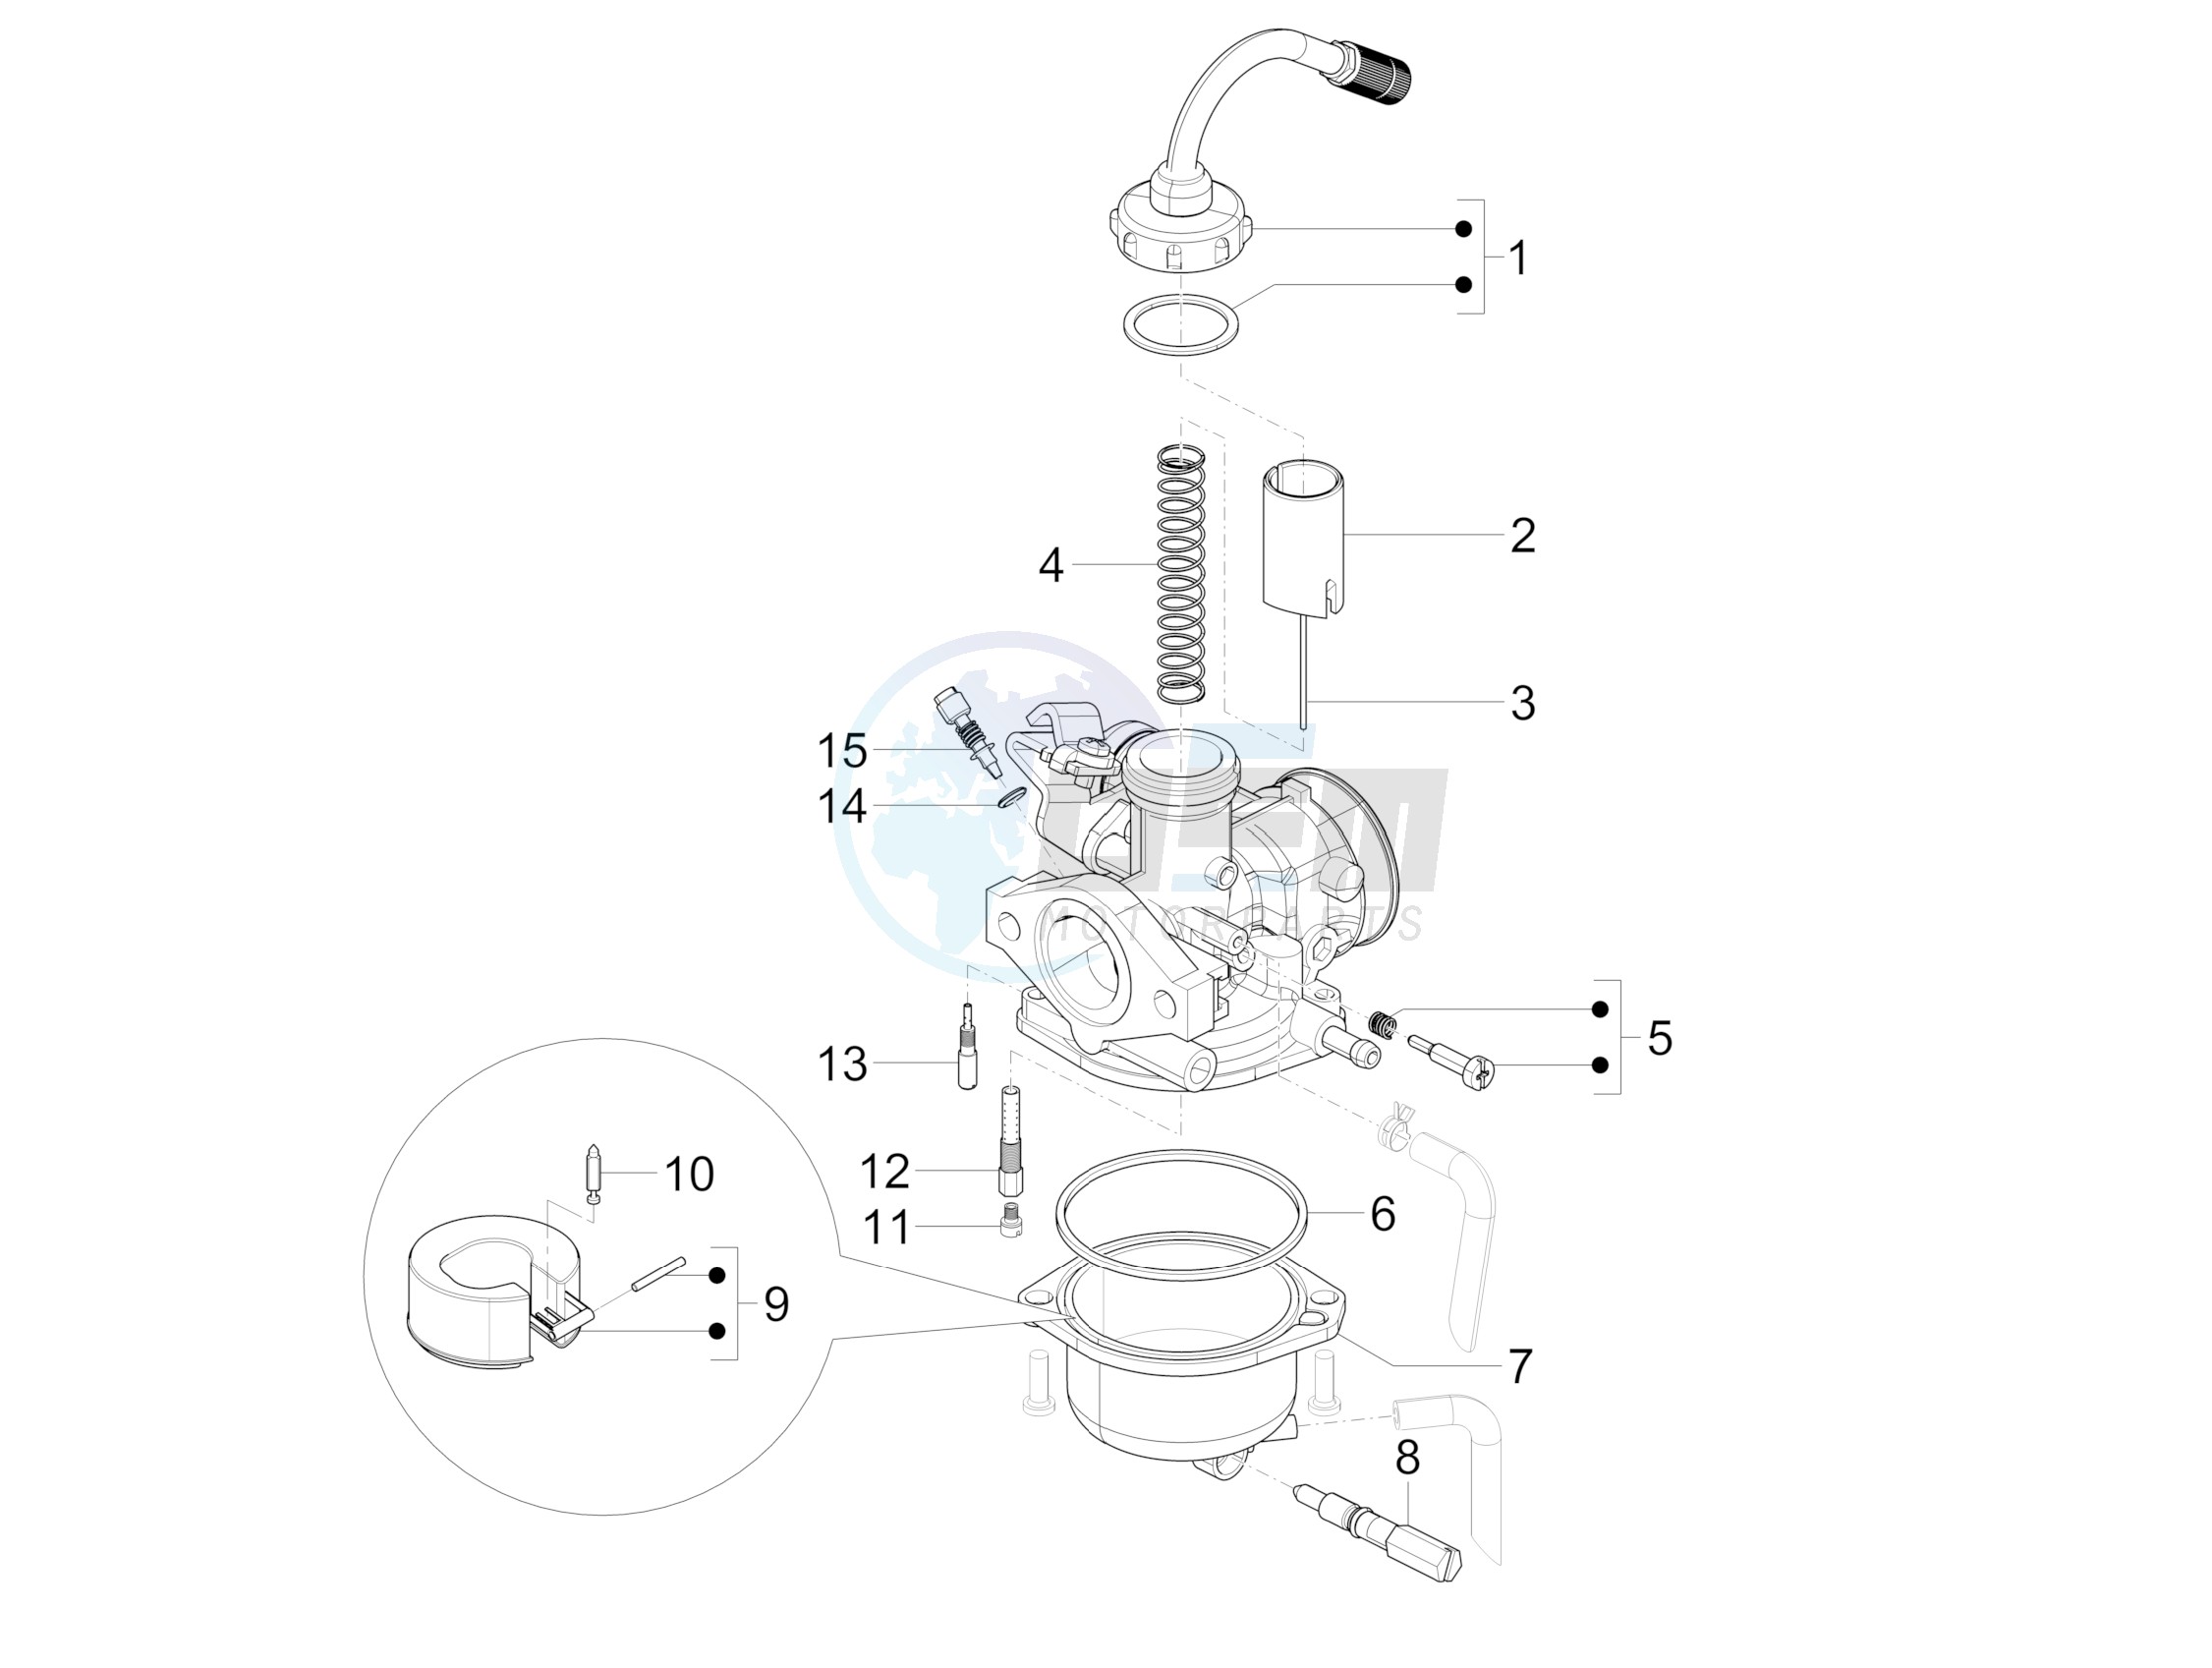 Carburetor's components blueprint